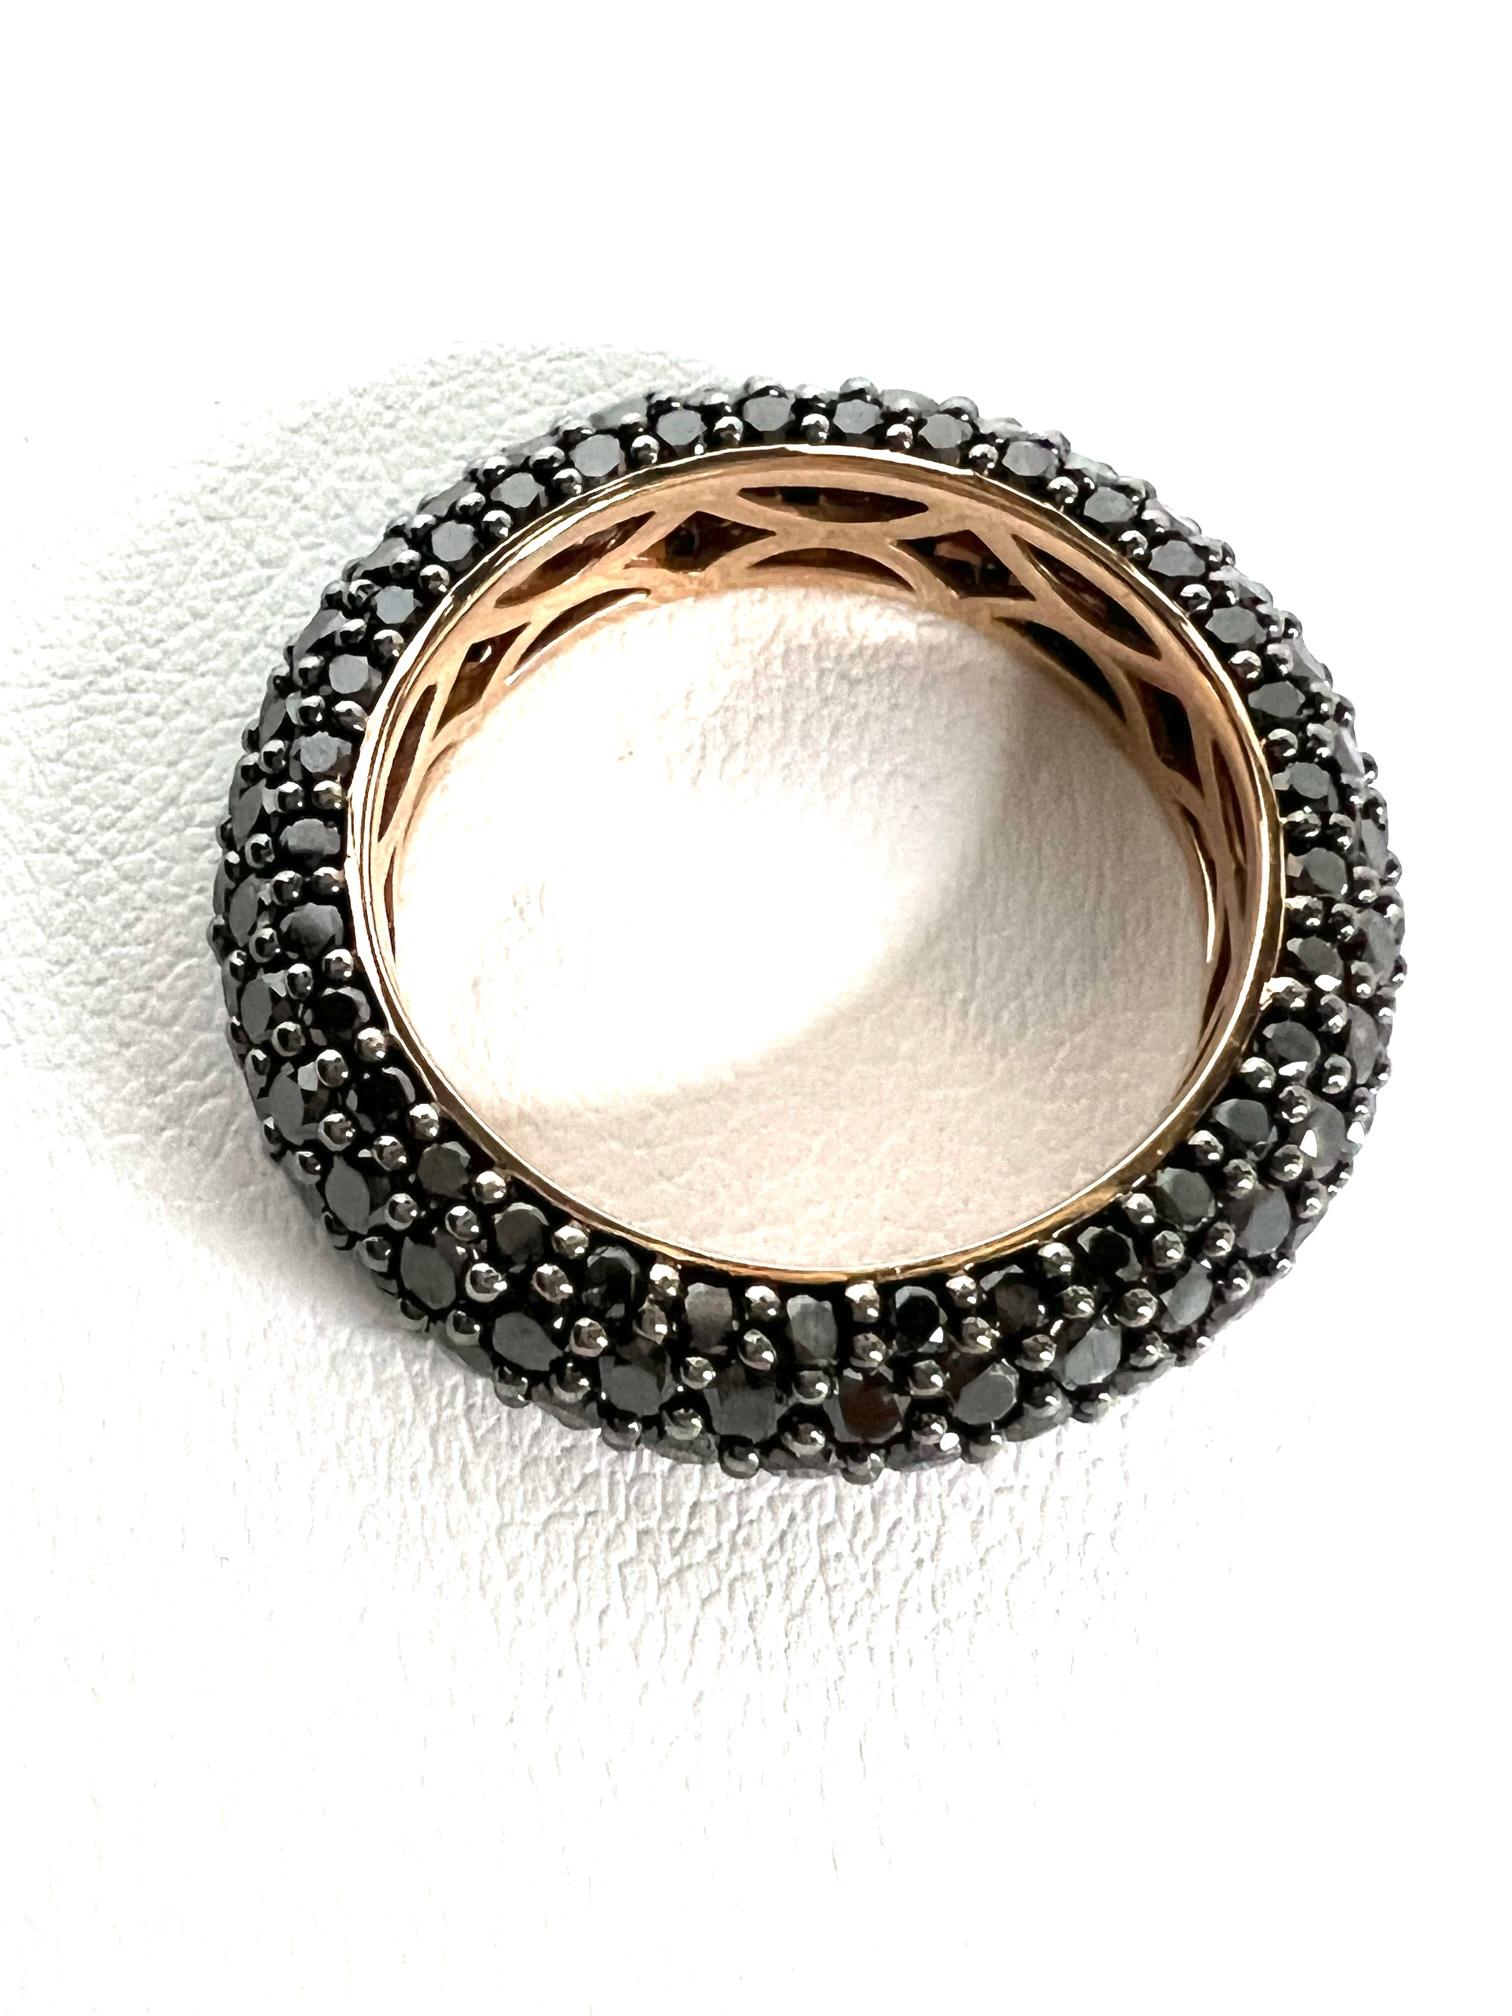 Thomas Leyser ist bekannt für seine zeitgenössischen Schmuckentwürfe unter Verwendung edler Edelsteine.

1 Ring aus 18k Rotgold 5,1gr. mit 165 behandelten schwarzen Diamanten, rund 1,3mm, 3,95cts.

Dieser Ring Größe 56 (7,5) ist nicht